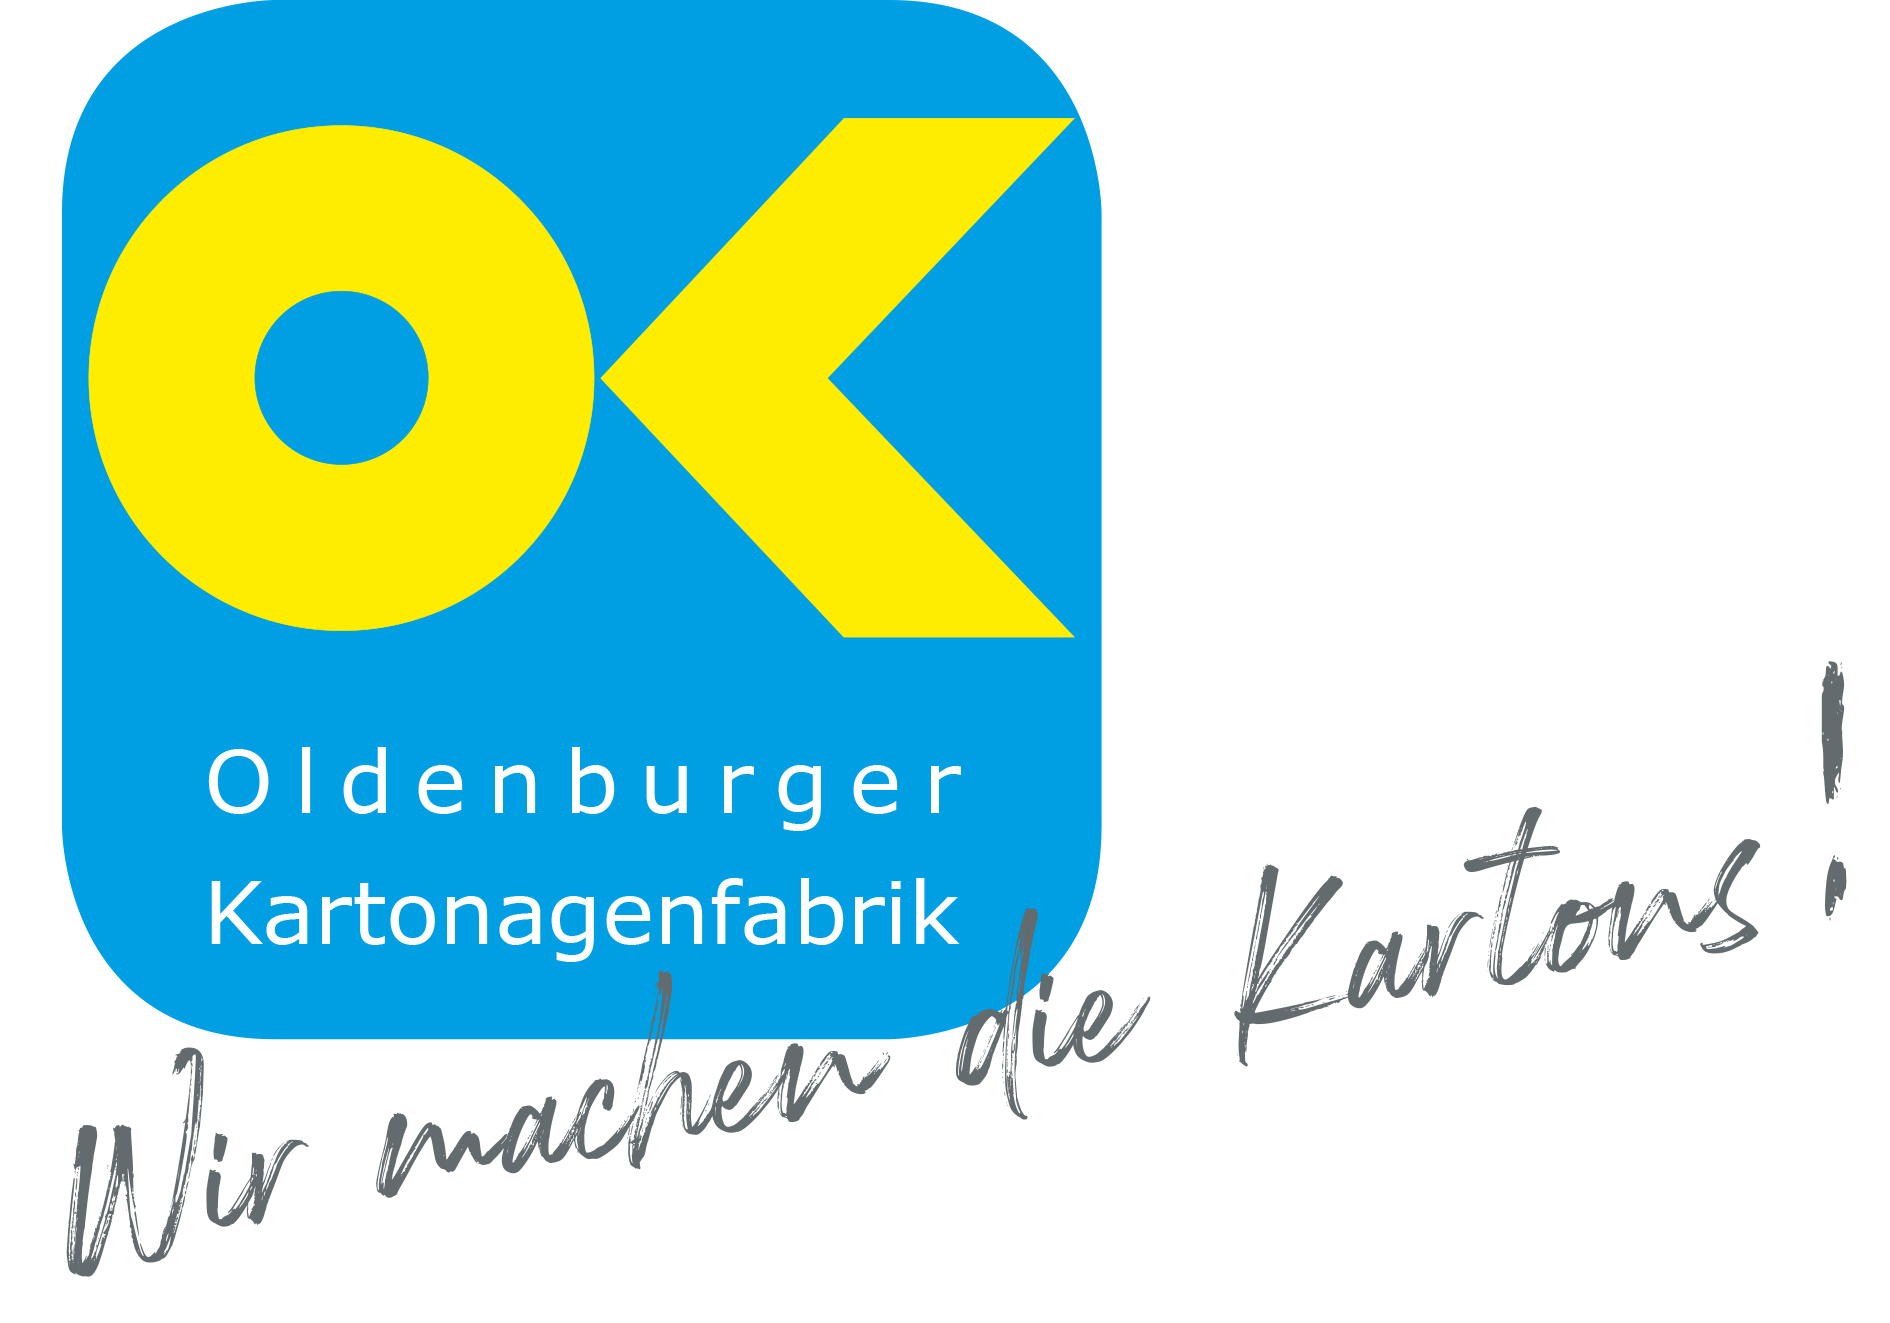 Oldenburger Kartonagenfabrik U. Burmeister GmbH